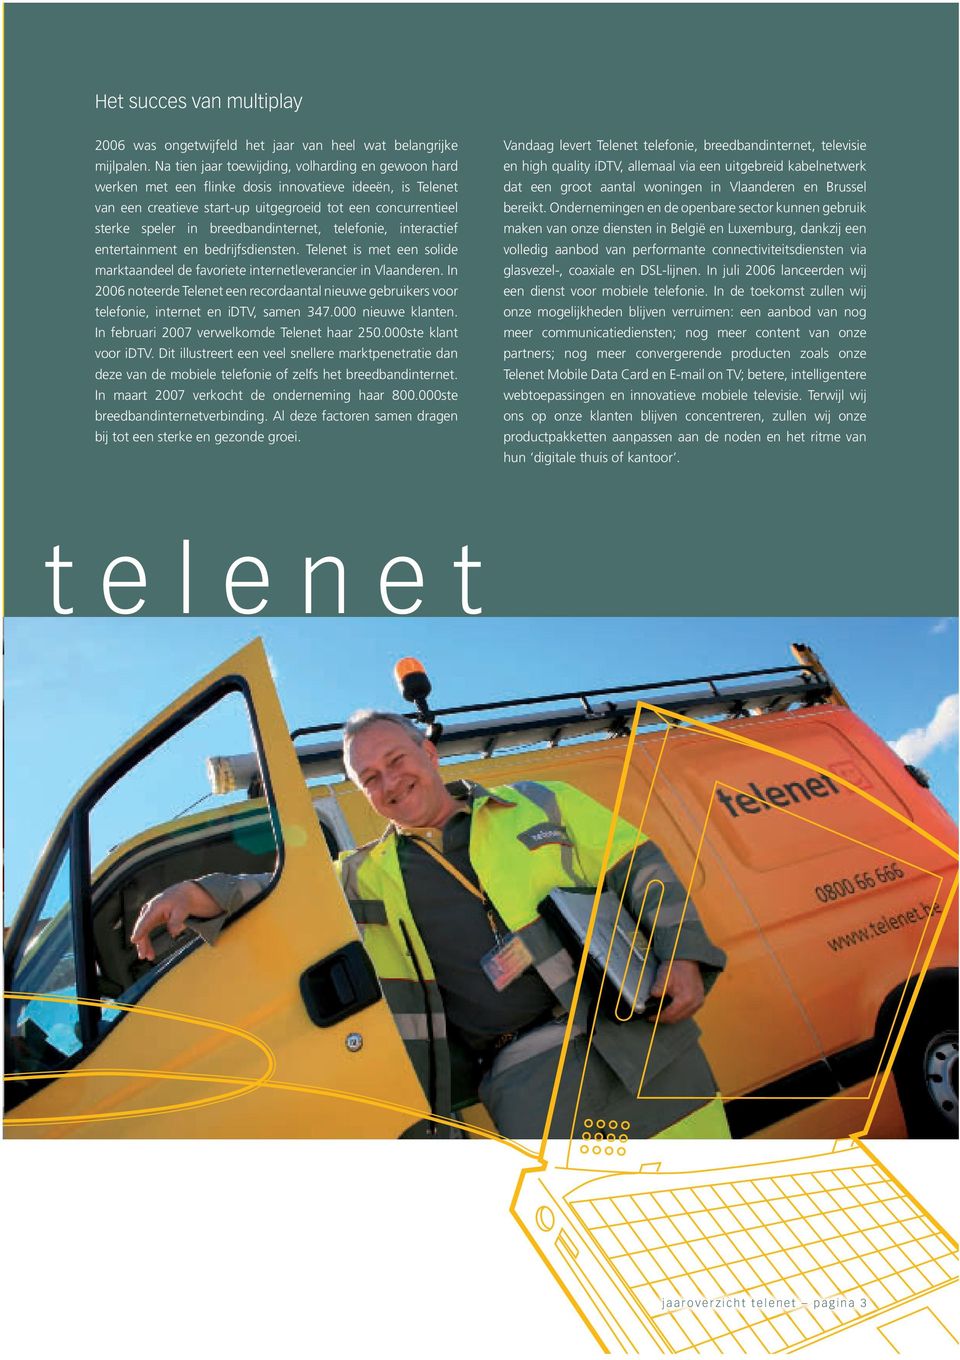 breedbandinternet, telefonie, interactief entertainment en bedrijfsdiensten. Telenet is met een solide marktaandeel de favoriete internetleverancier in Vlaanderen.